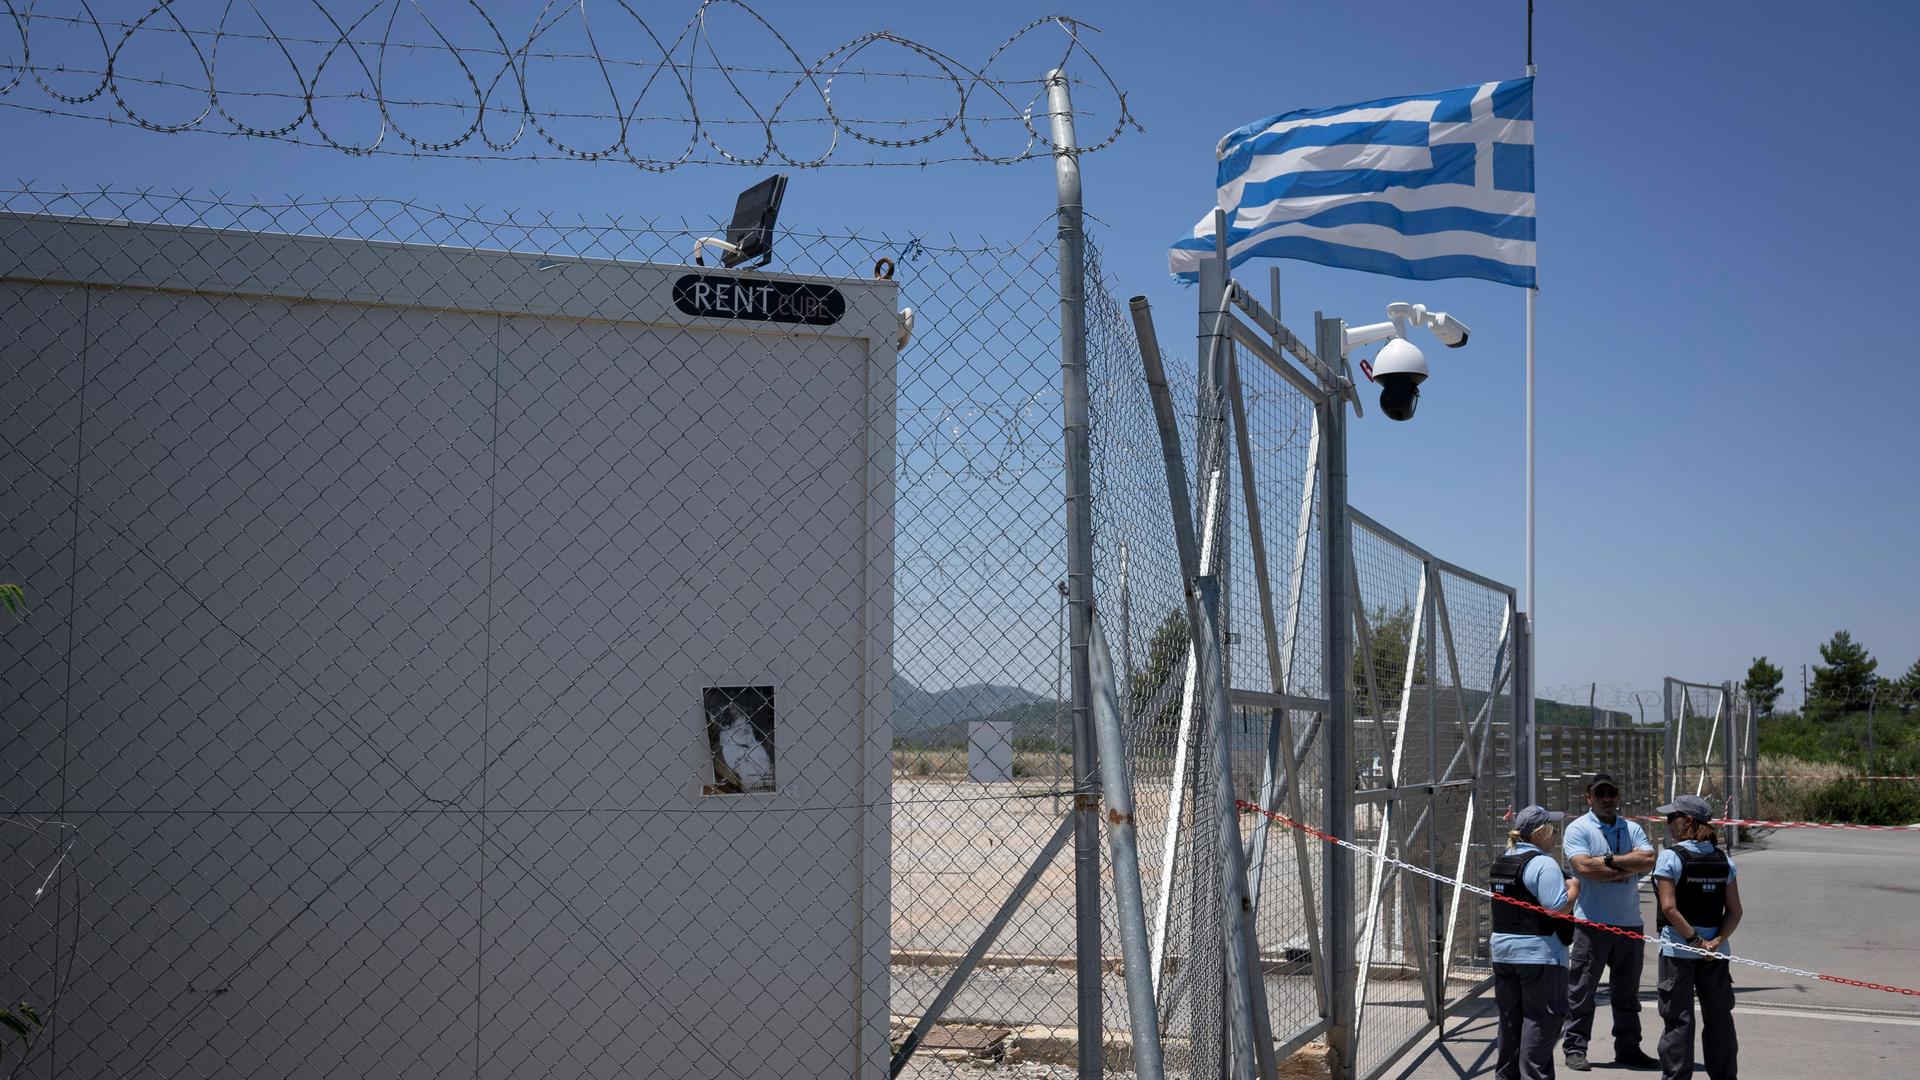 Die griechische Flagge weht am Zaun eines Aufnahmezentrums für Flüchtlinge und Migranten. Davor stehen Sicherheitsleute.